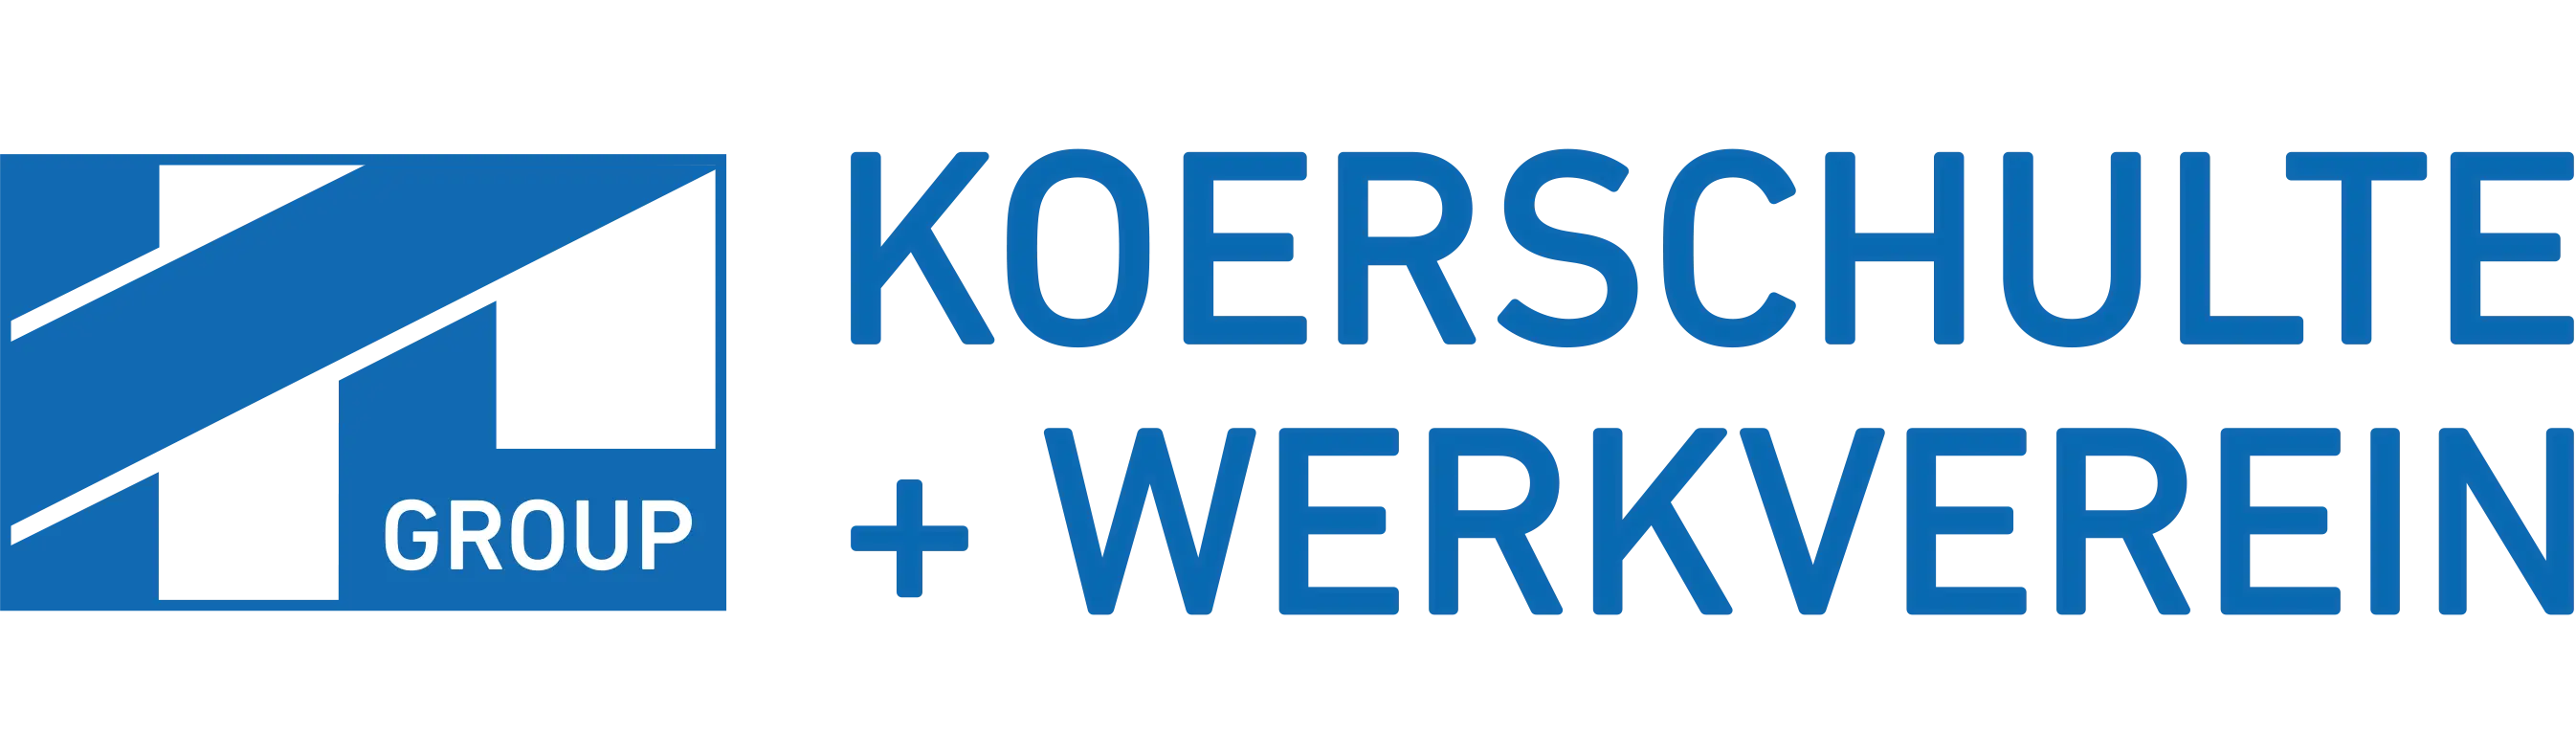 KL-Group | Koerschulte + Werkverein - Technischer Großhandel